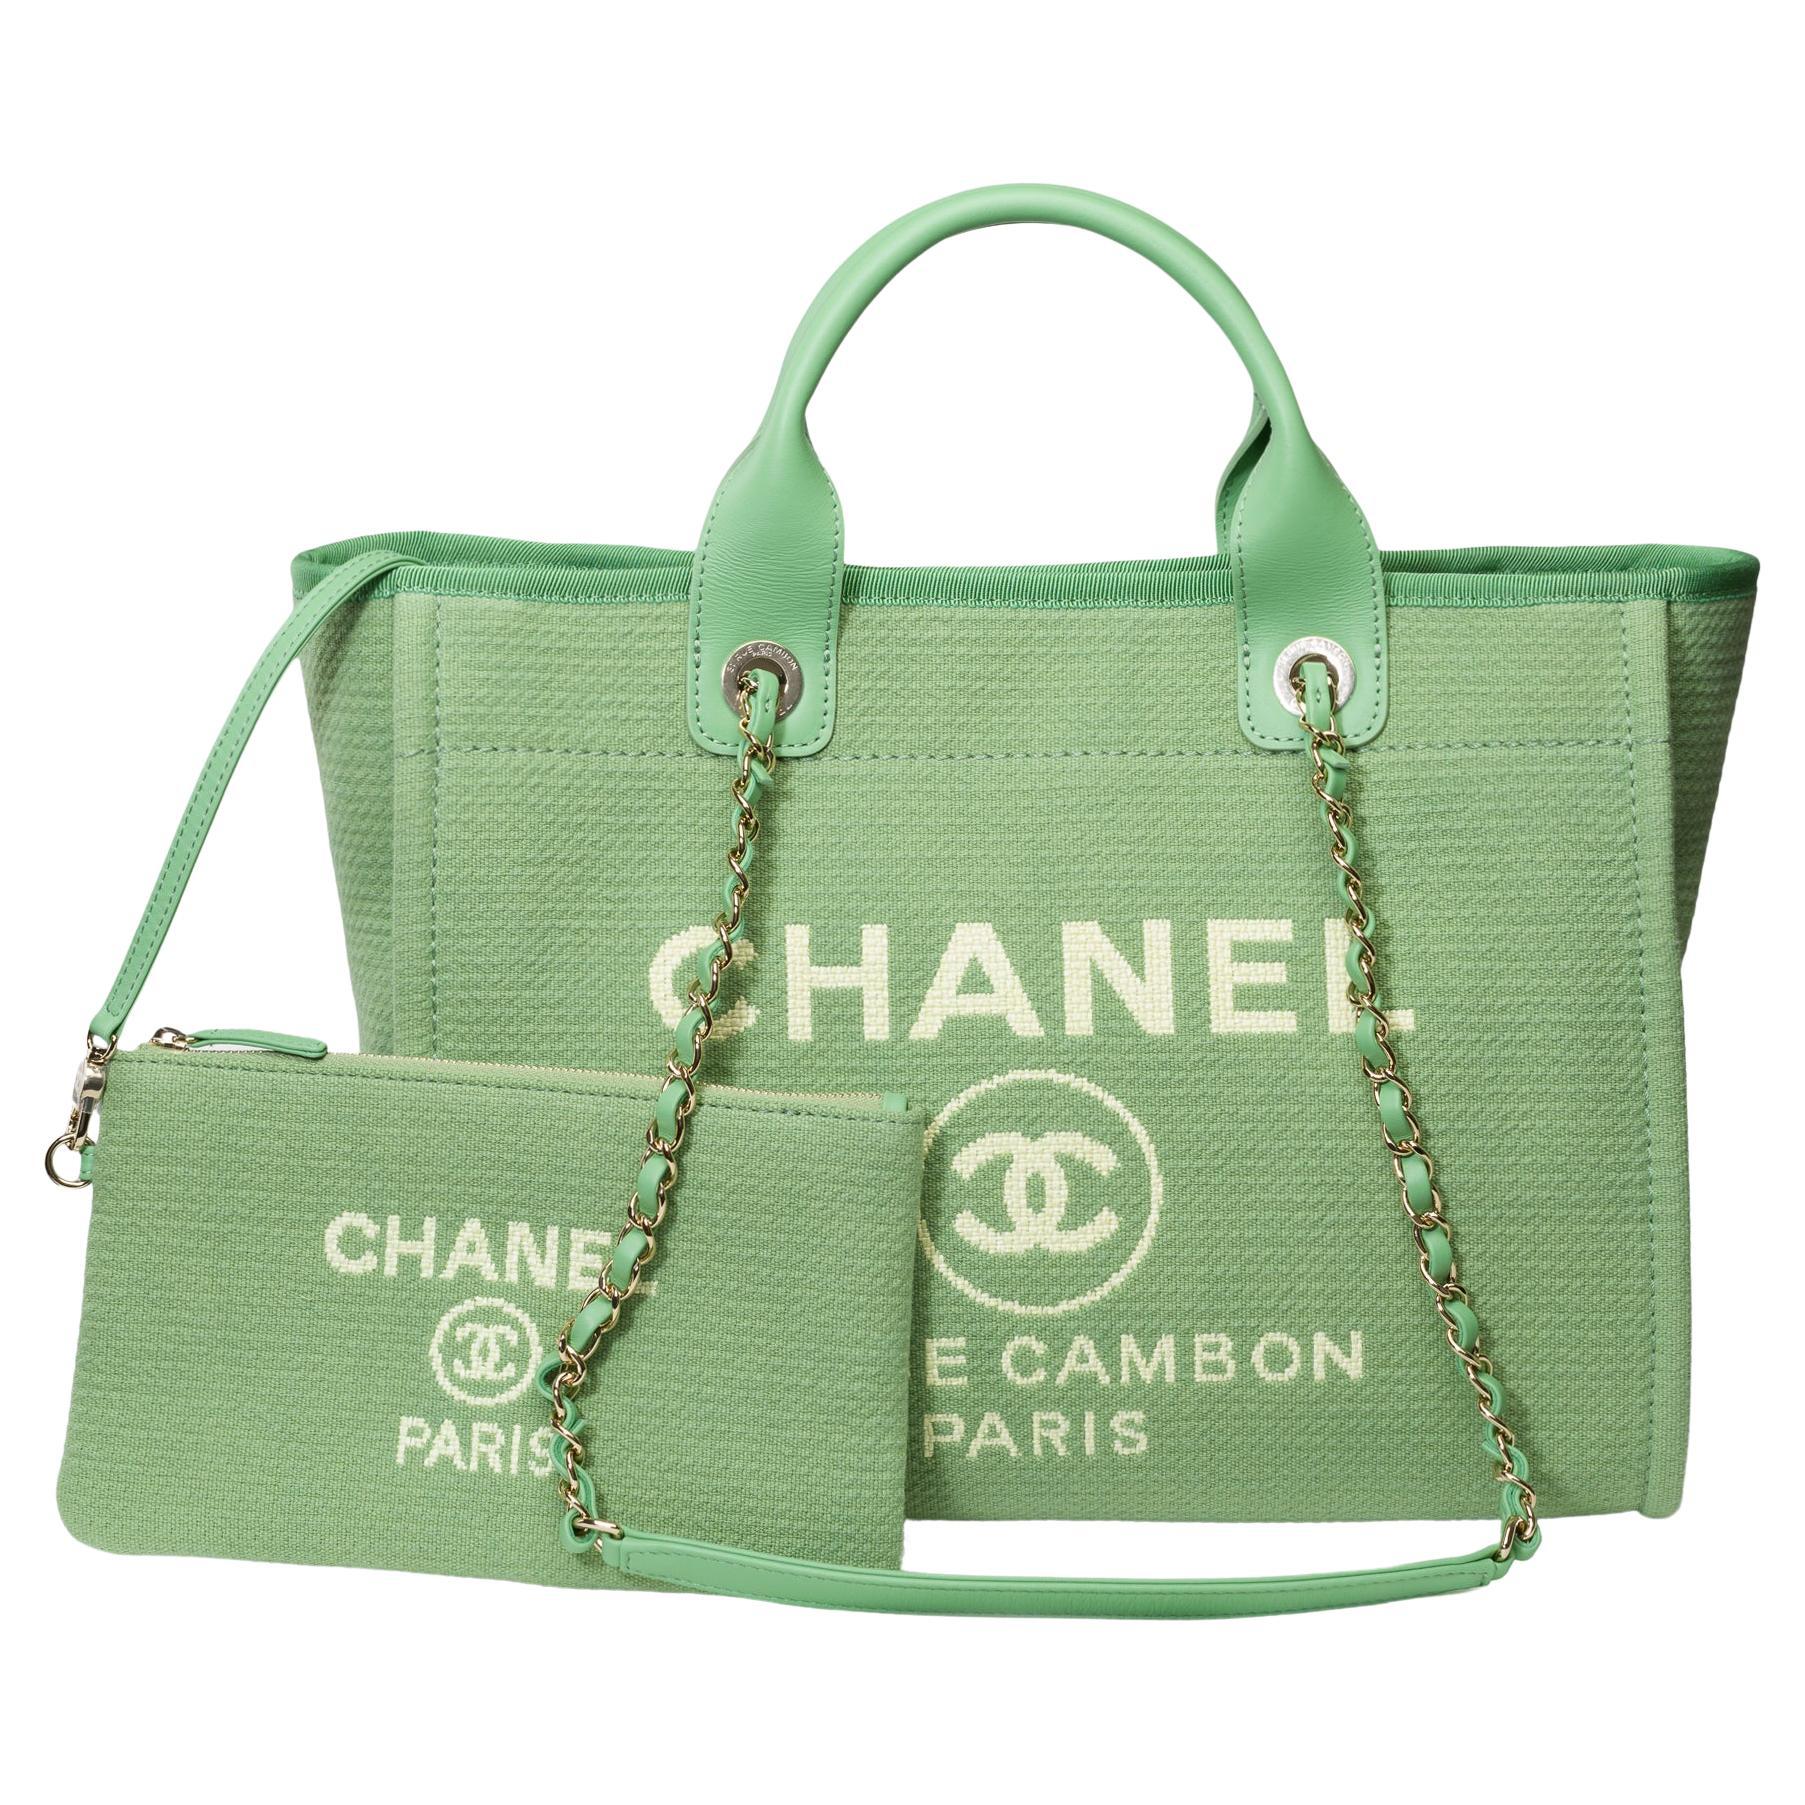 Superbe sac fourre-tout Chanel Deauville en édition limitée en toile verte, 1 pochette amovible en toile verte,  accessoires en métal argenté, double poignée en métal argenté entrelacée de cuir vert pour un portage à la main et à l'épaule

Fermeture